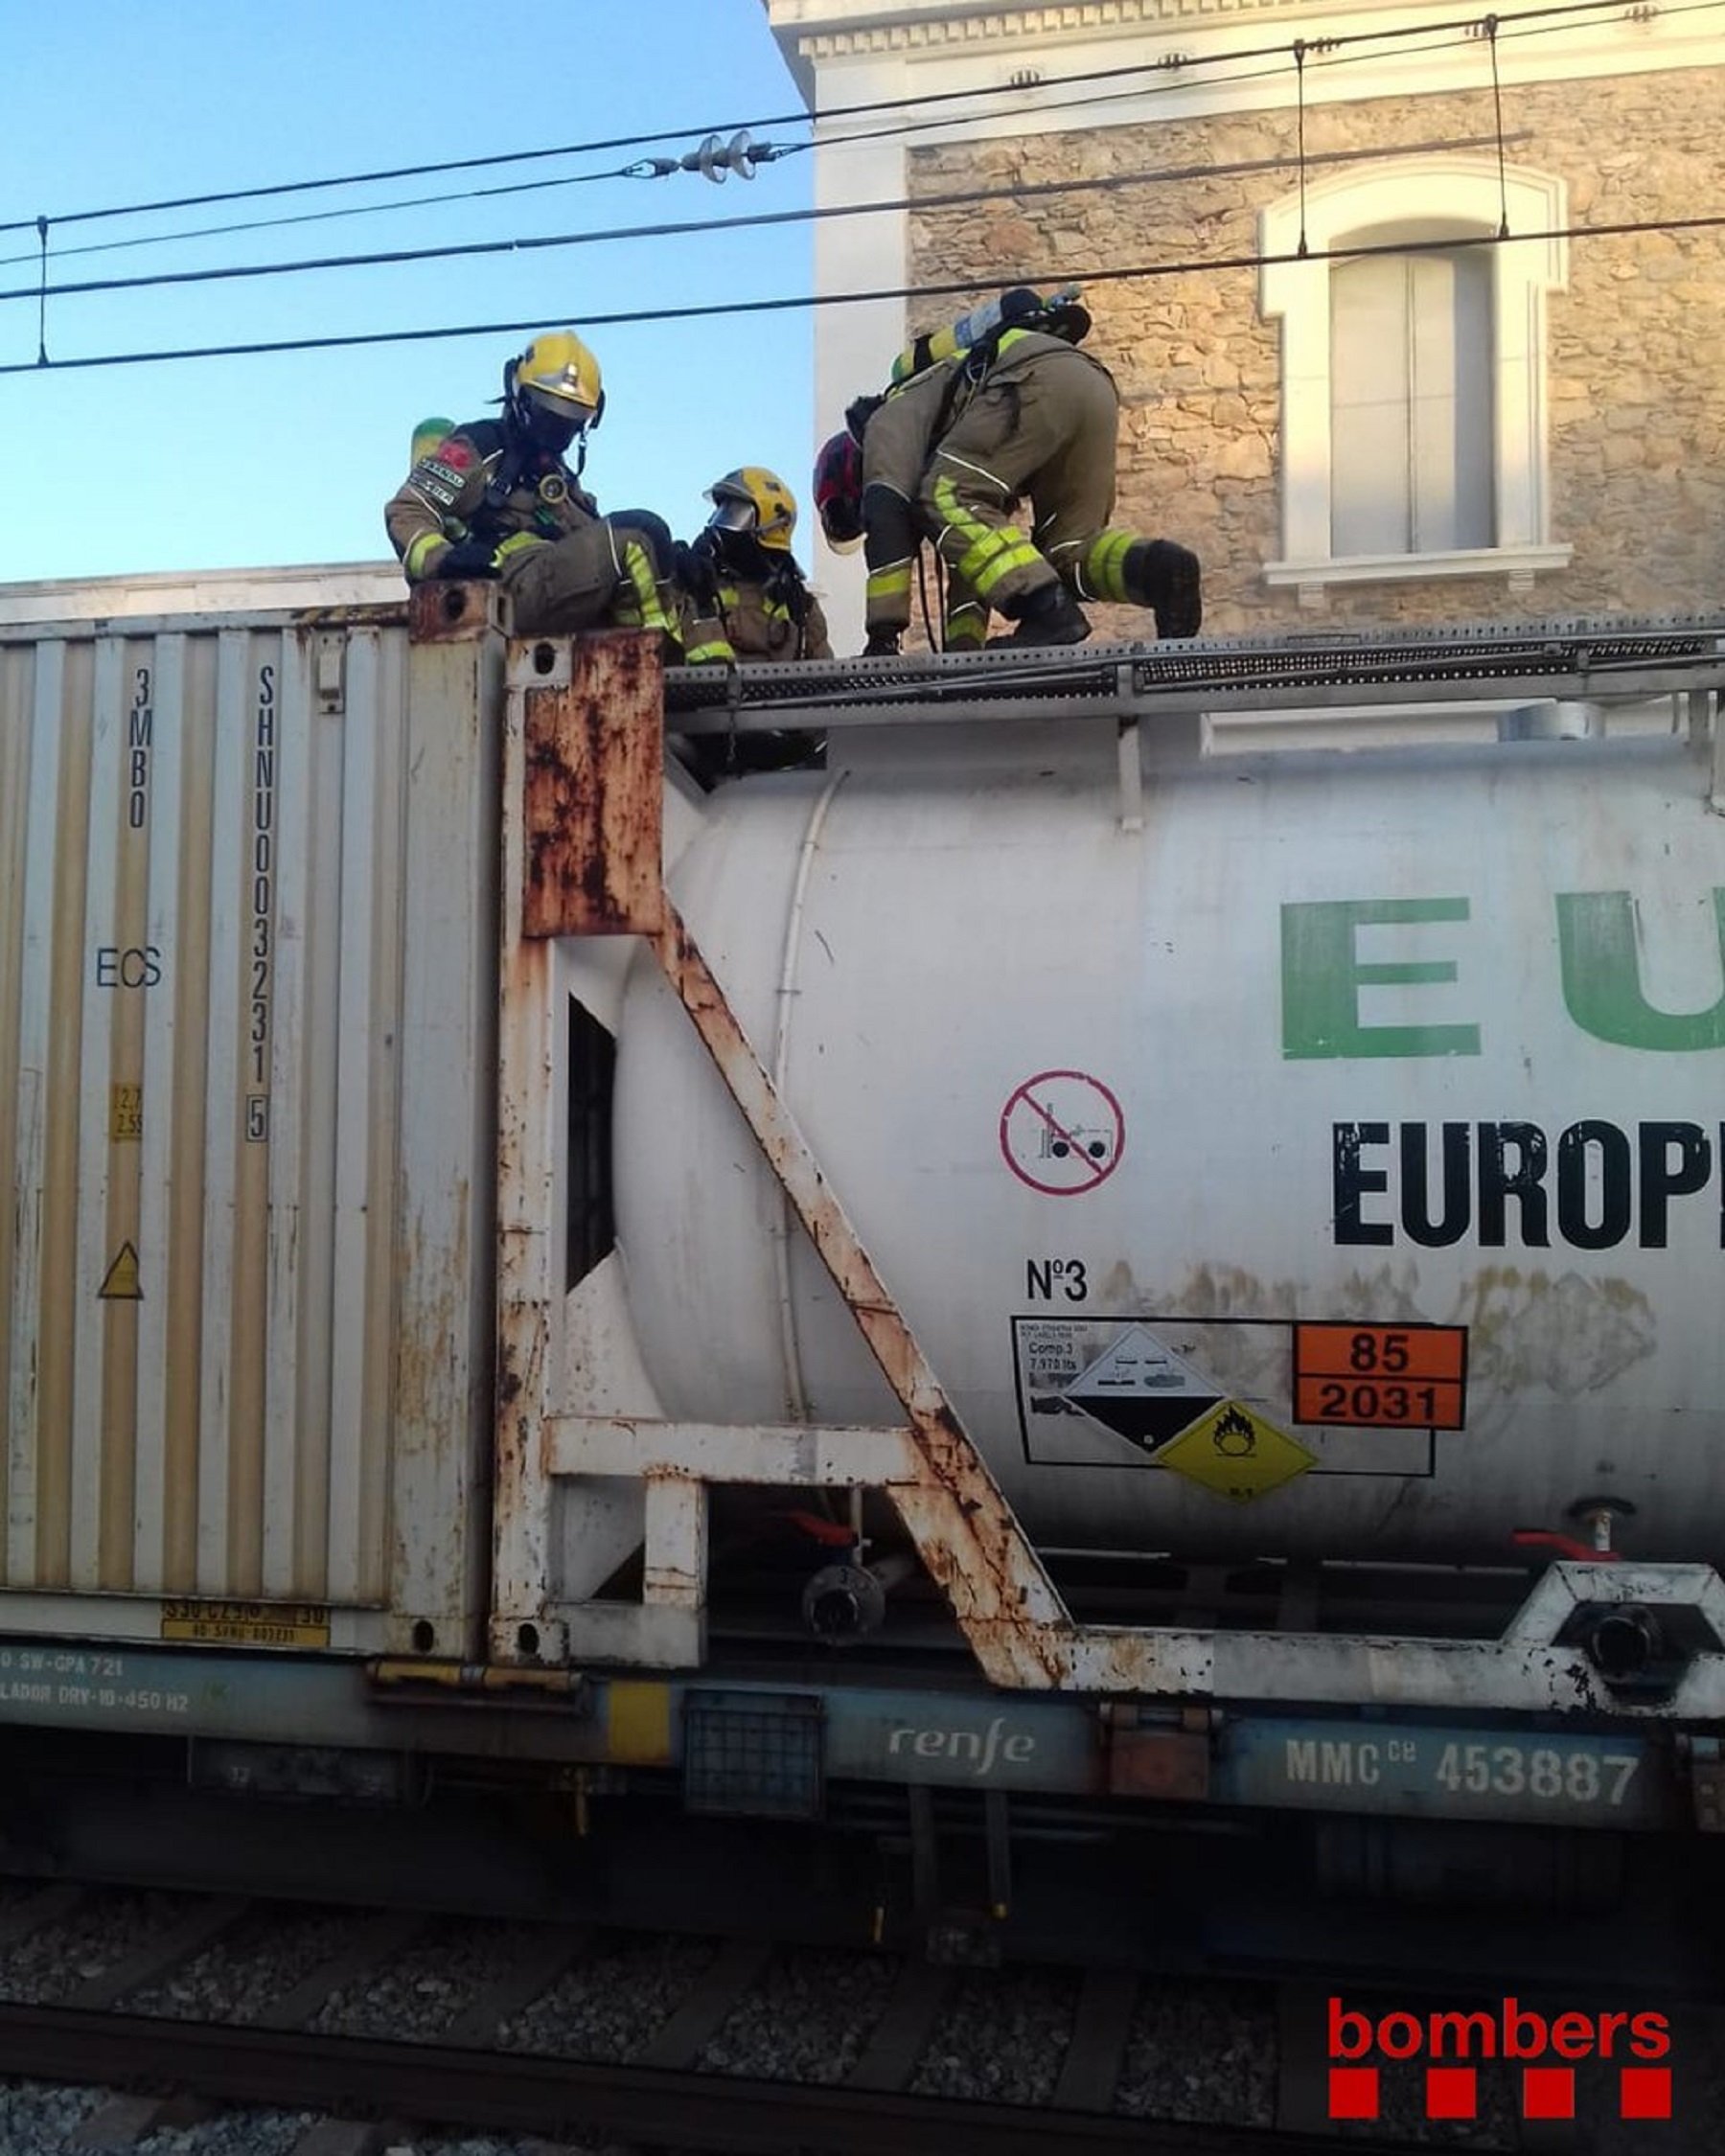 Tallada la via entre Girona i Maçanet per una fuita d'àcid nítric en un tren de mercaderies